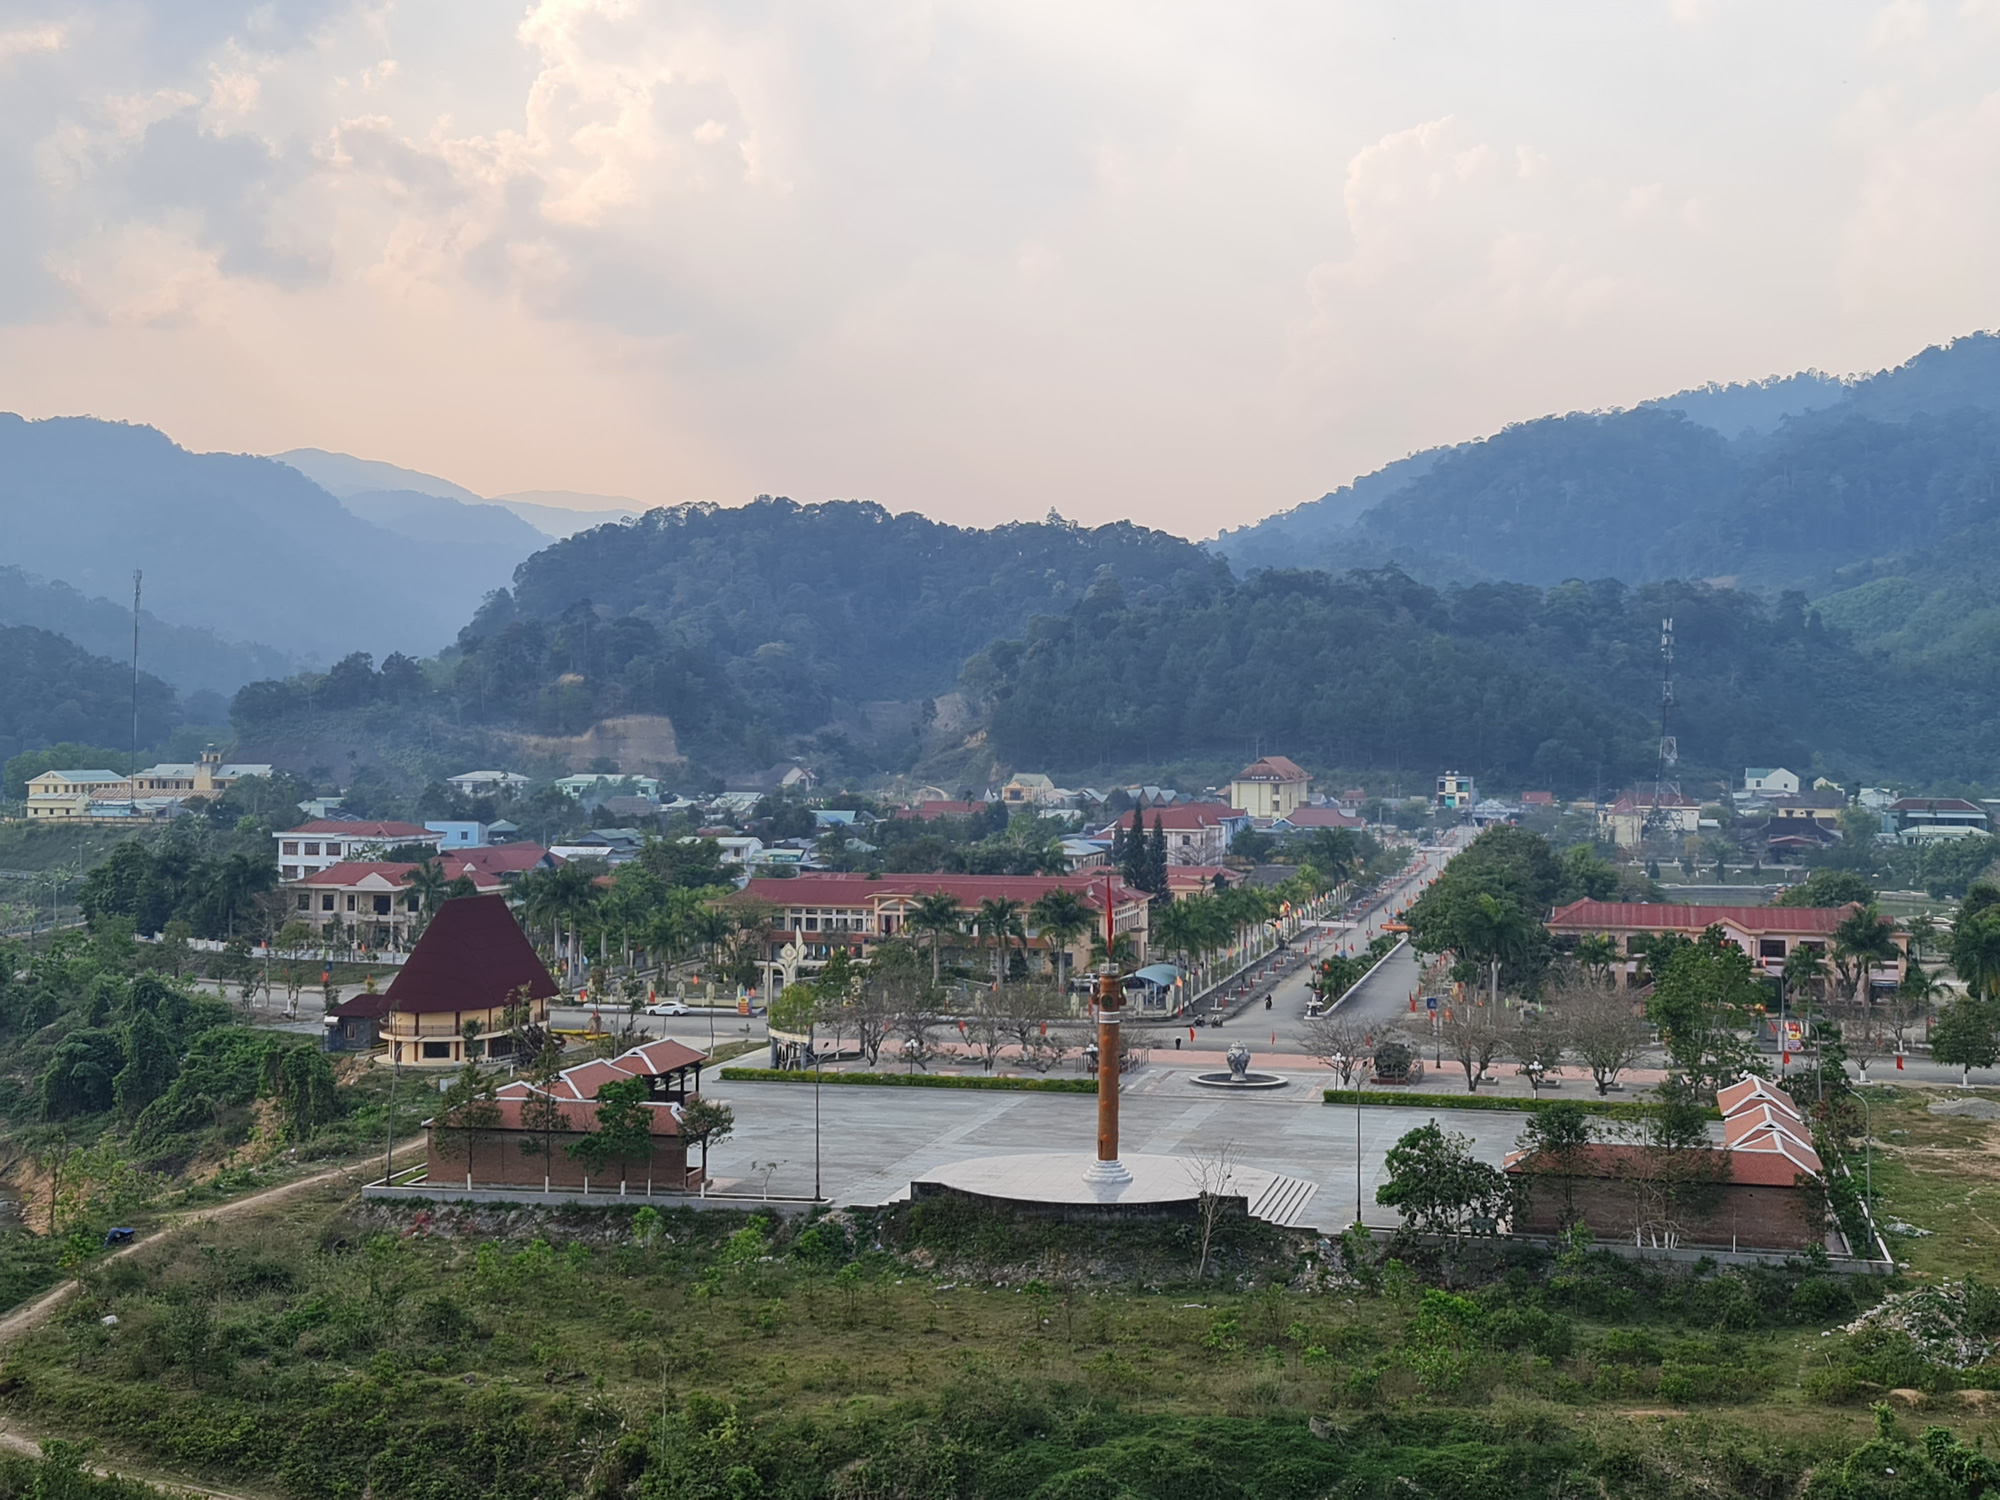 Quảng Nam: Huyện miền núi Tây Giang vượt khó khăn để nâng cao thu nhập cho người dân - Ảnh 3.